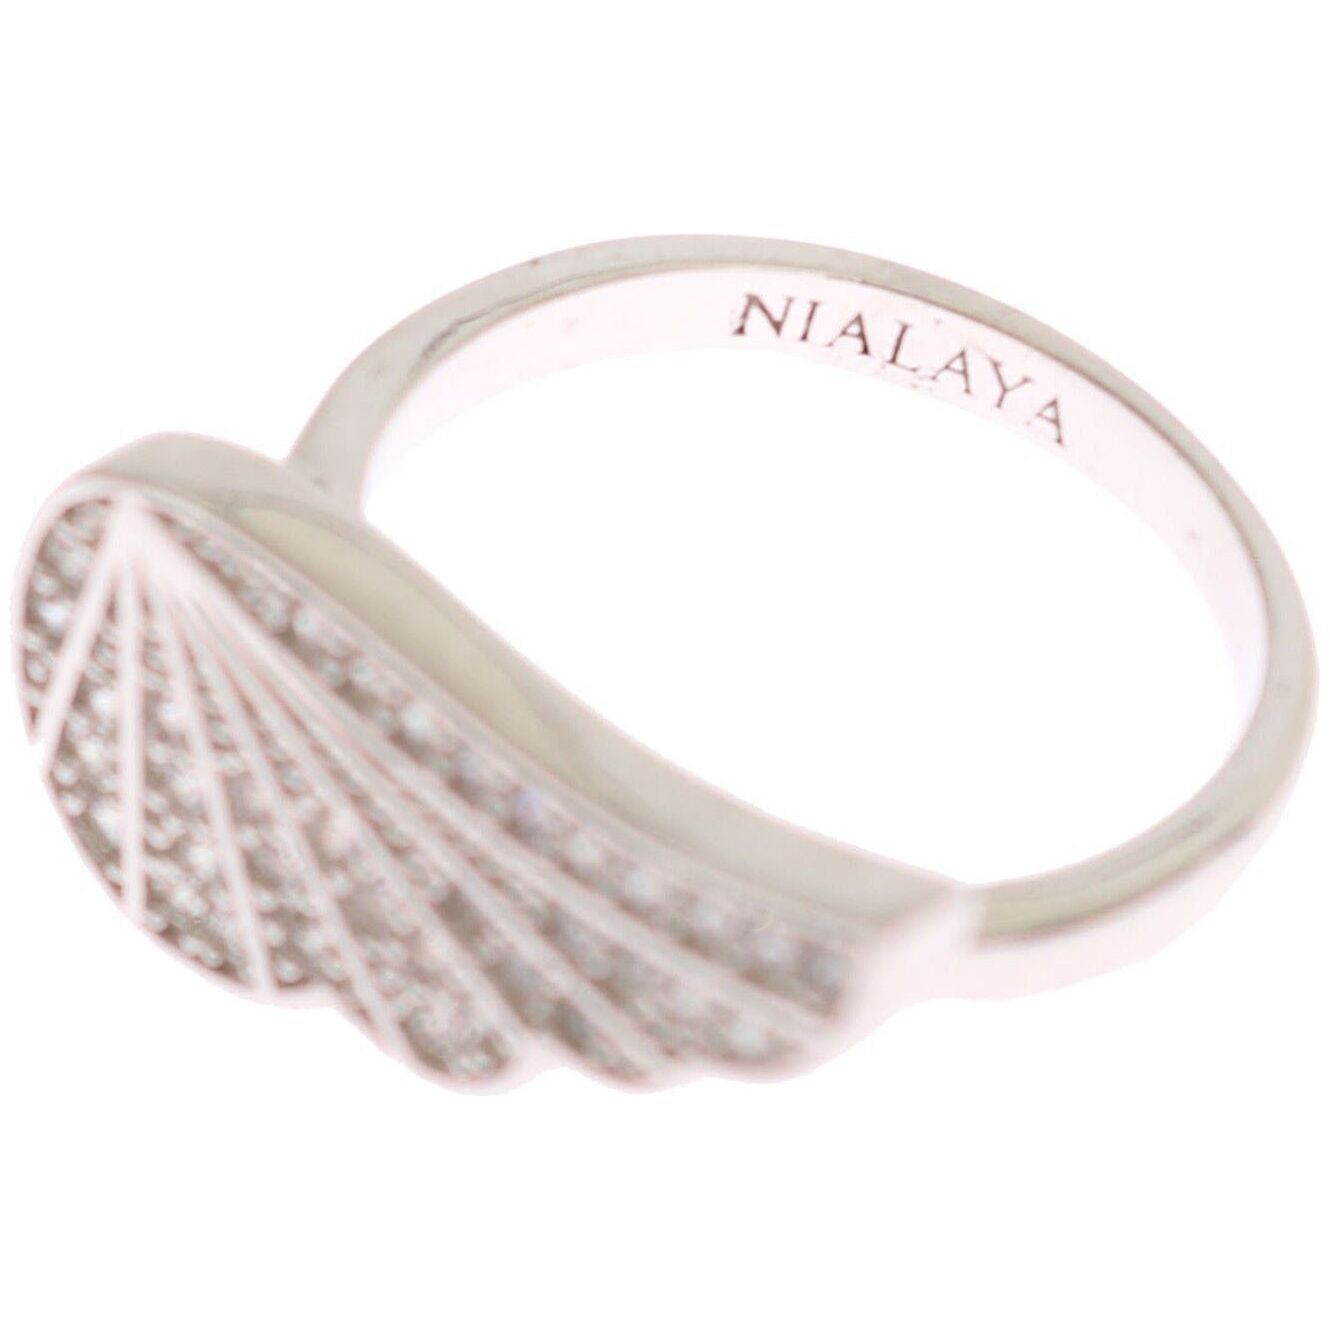 Nialaya Elegant Sterling Silver CZ Crystal Ring silver-womens-wing-clear-cz-925-silver-ring Ring s-l1600-2022-10-06T160930.121-a330de79-bf3.jpg